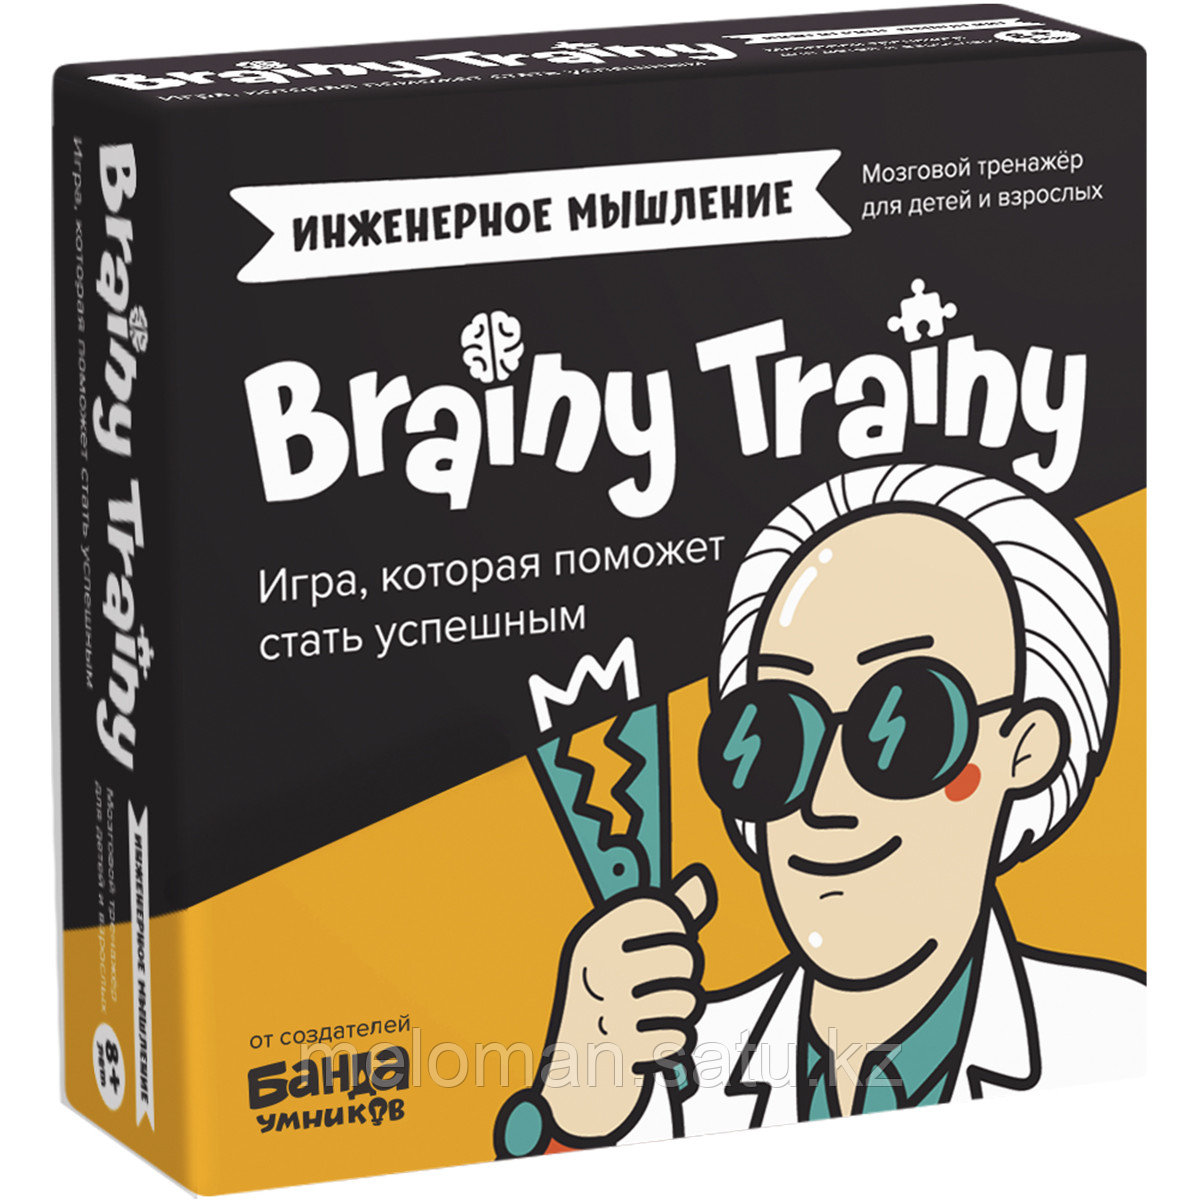 BRAINY TRAINY: Инженерное мышление